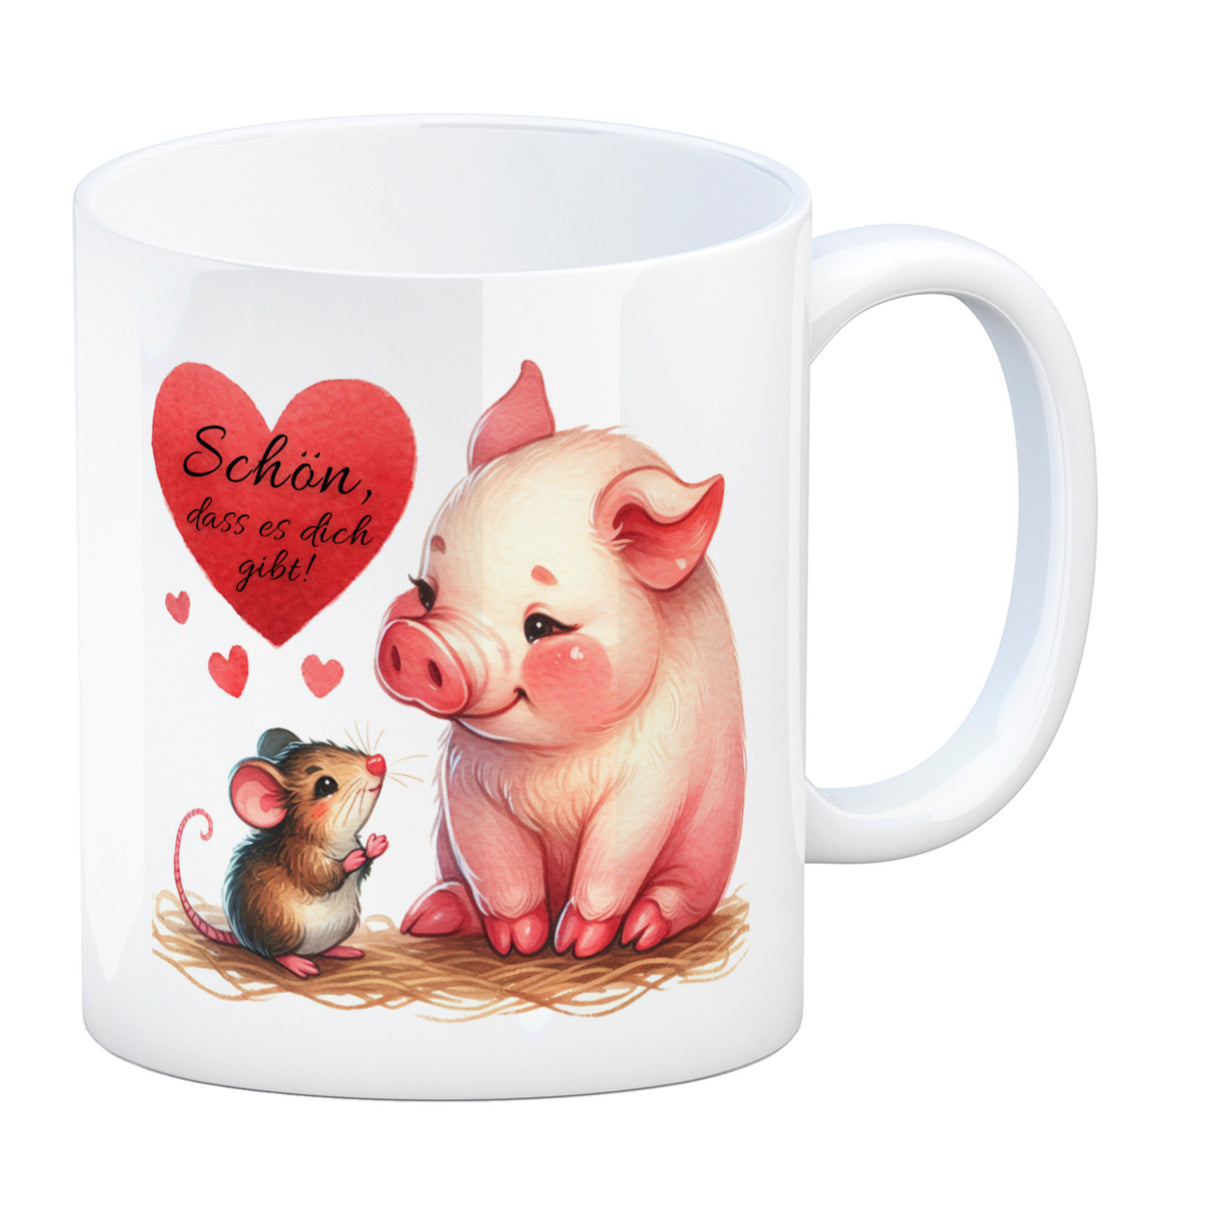 Schwein mit Maus und Herz Kaffeebecher mit Spruch Schön dass es dich gibt